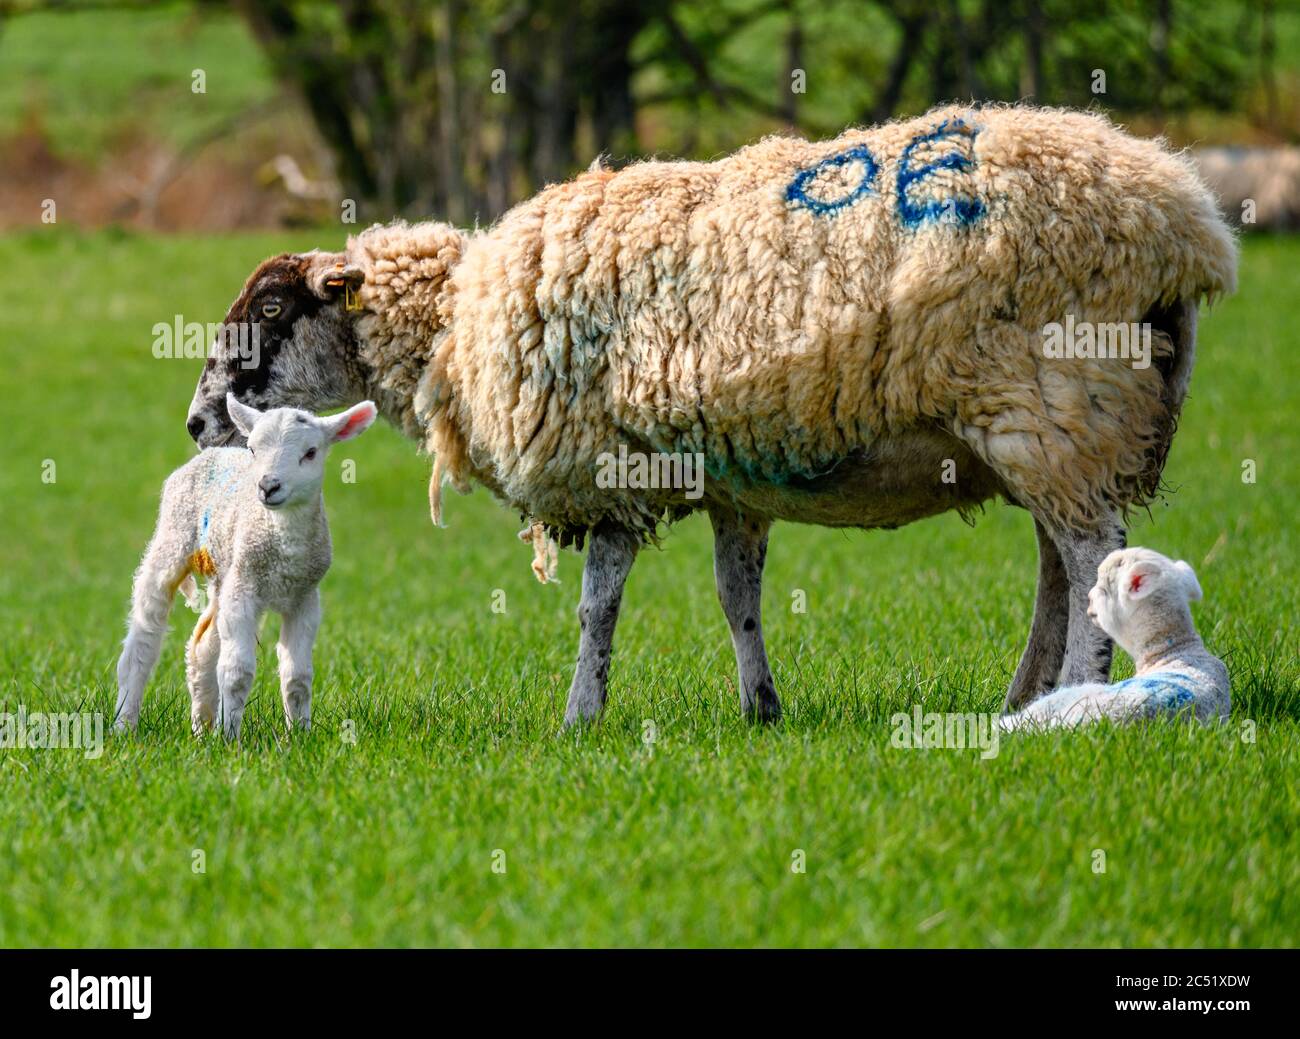 Brebis et agneaux jumeaux nés récemment Banque D'Images